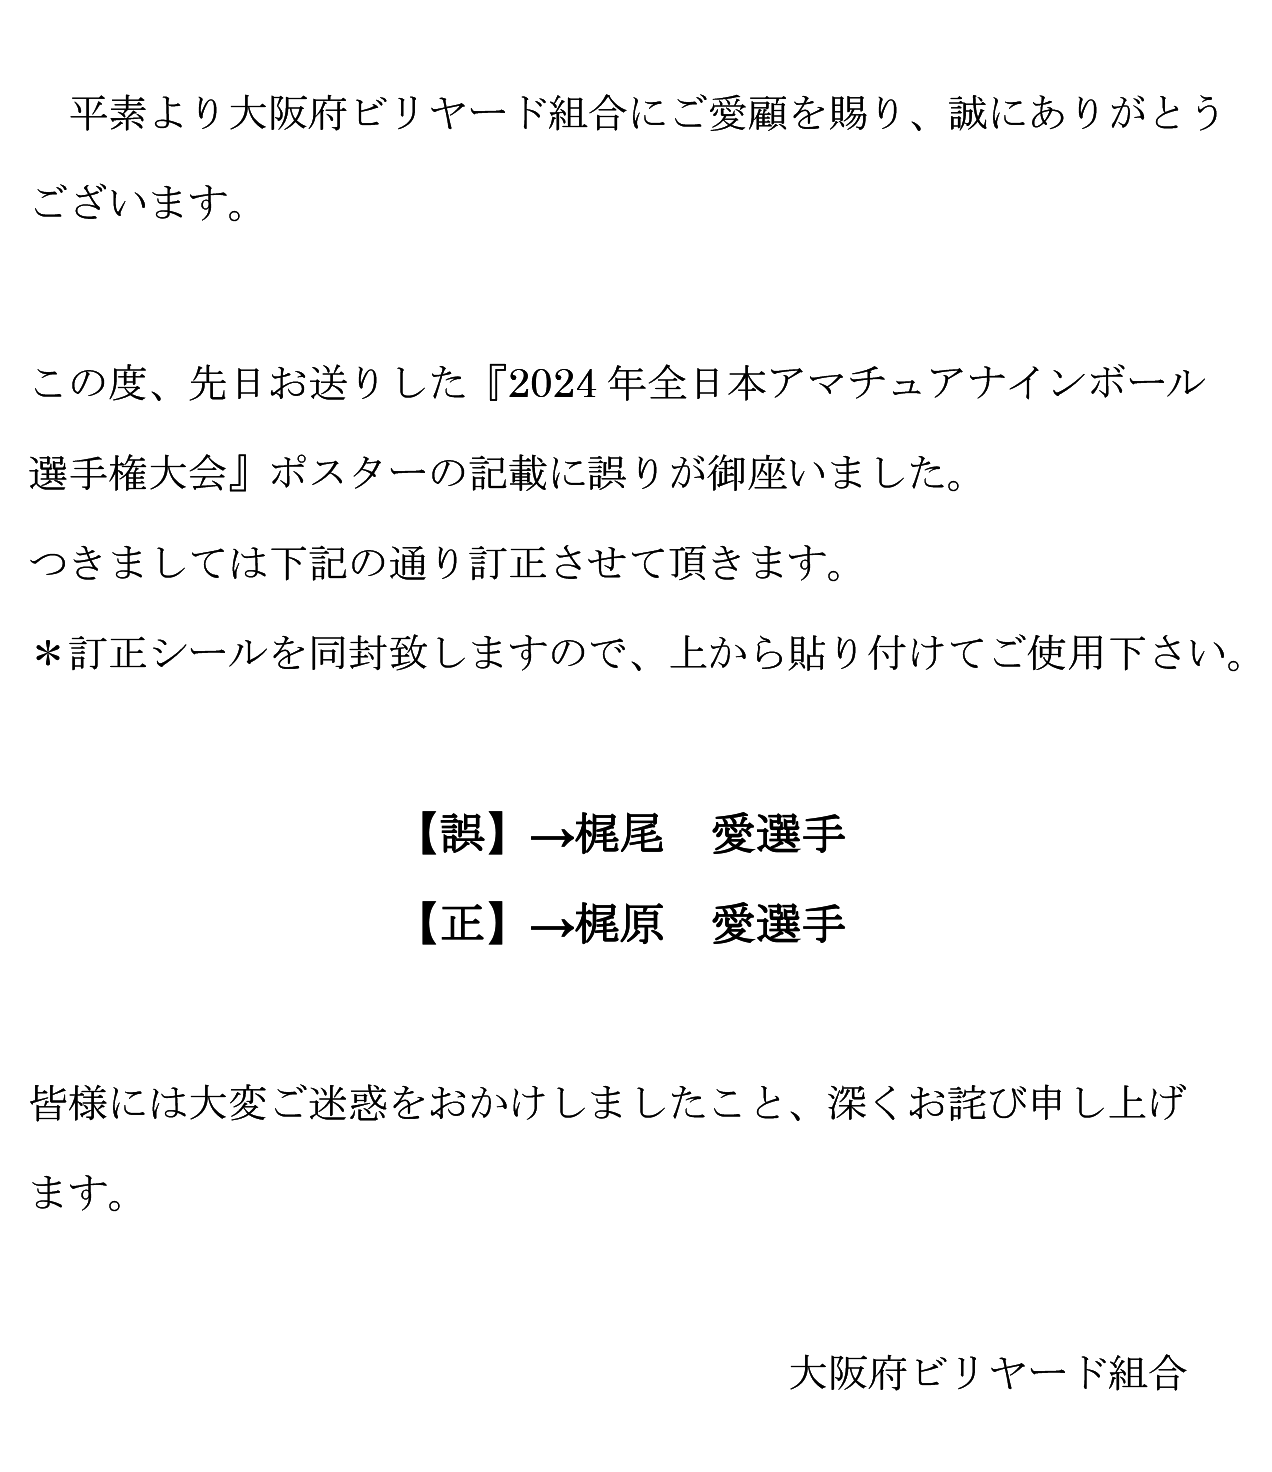 2024全日本アマチュアナインボール選手権大会ポスター誤植のお詫び・訂正について